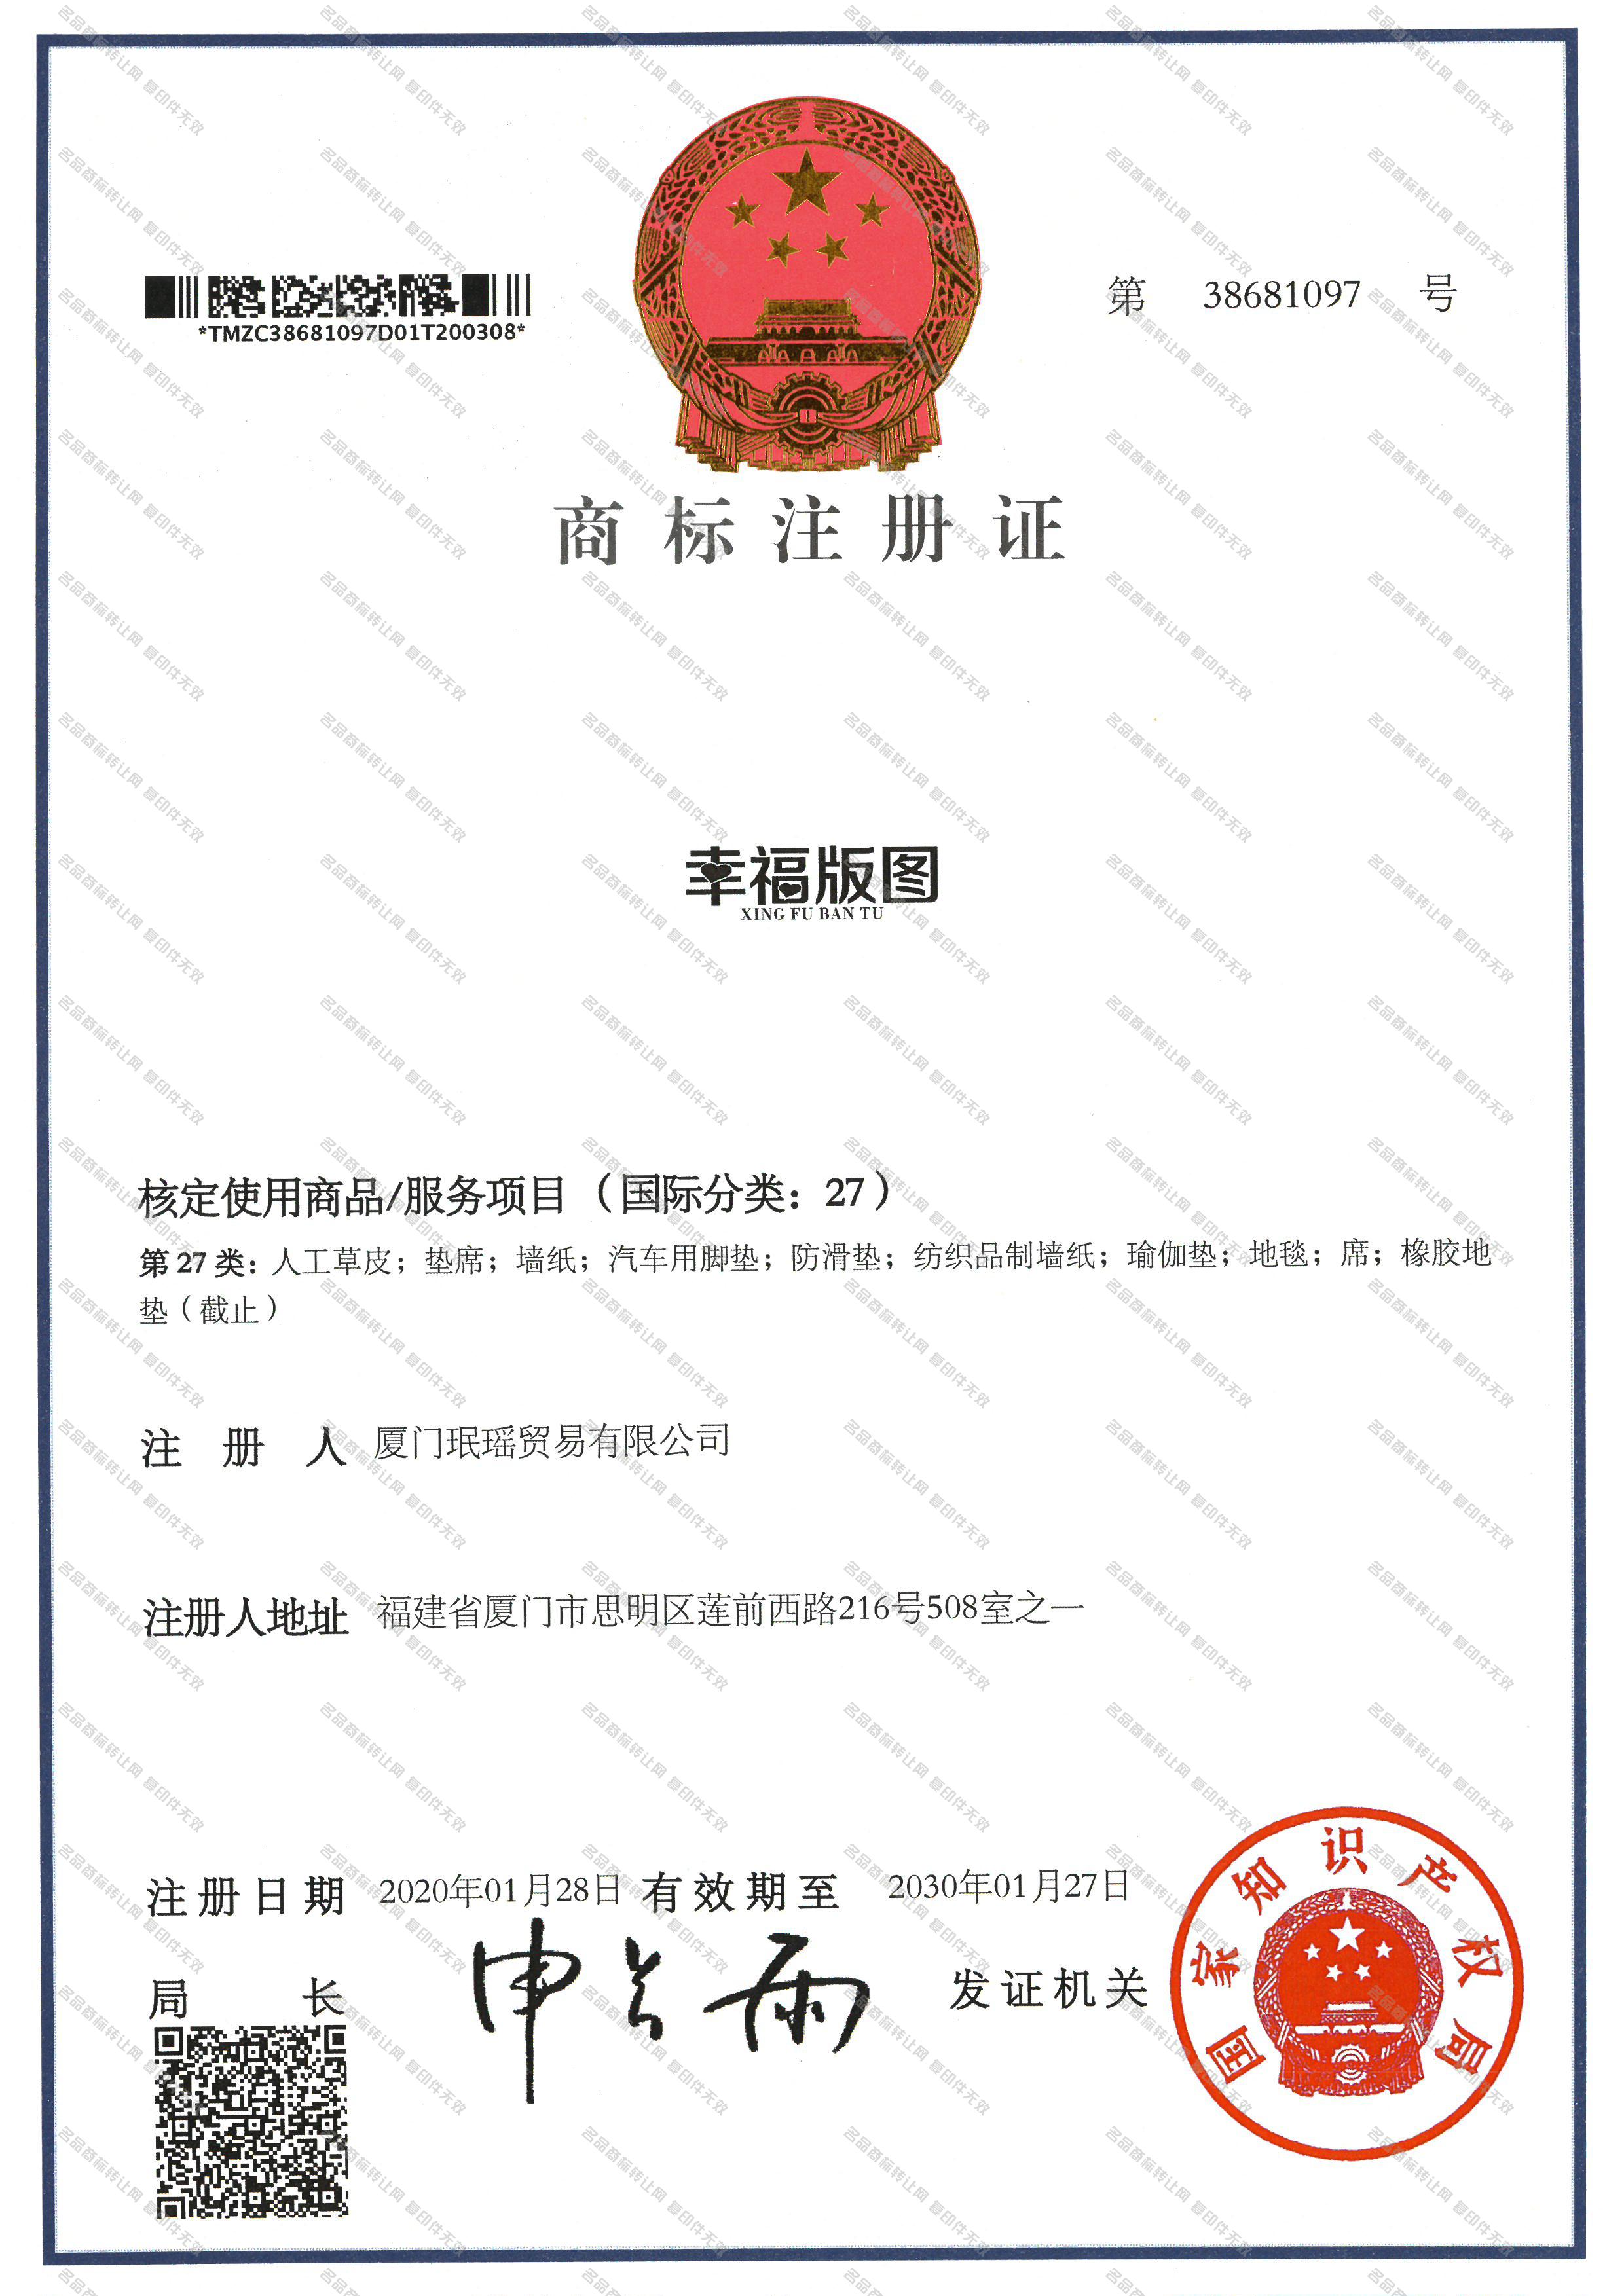 幸福版图 XINGFUBANTU注册证